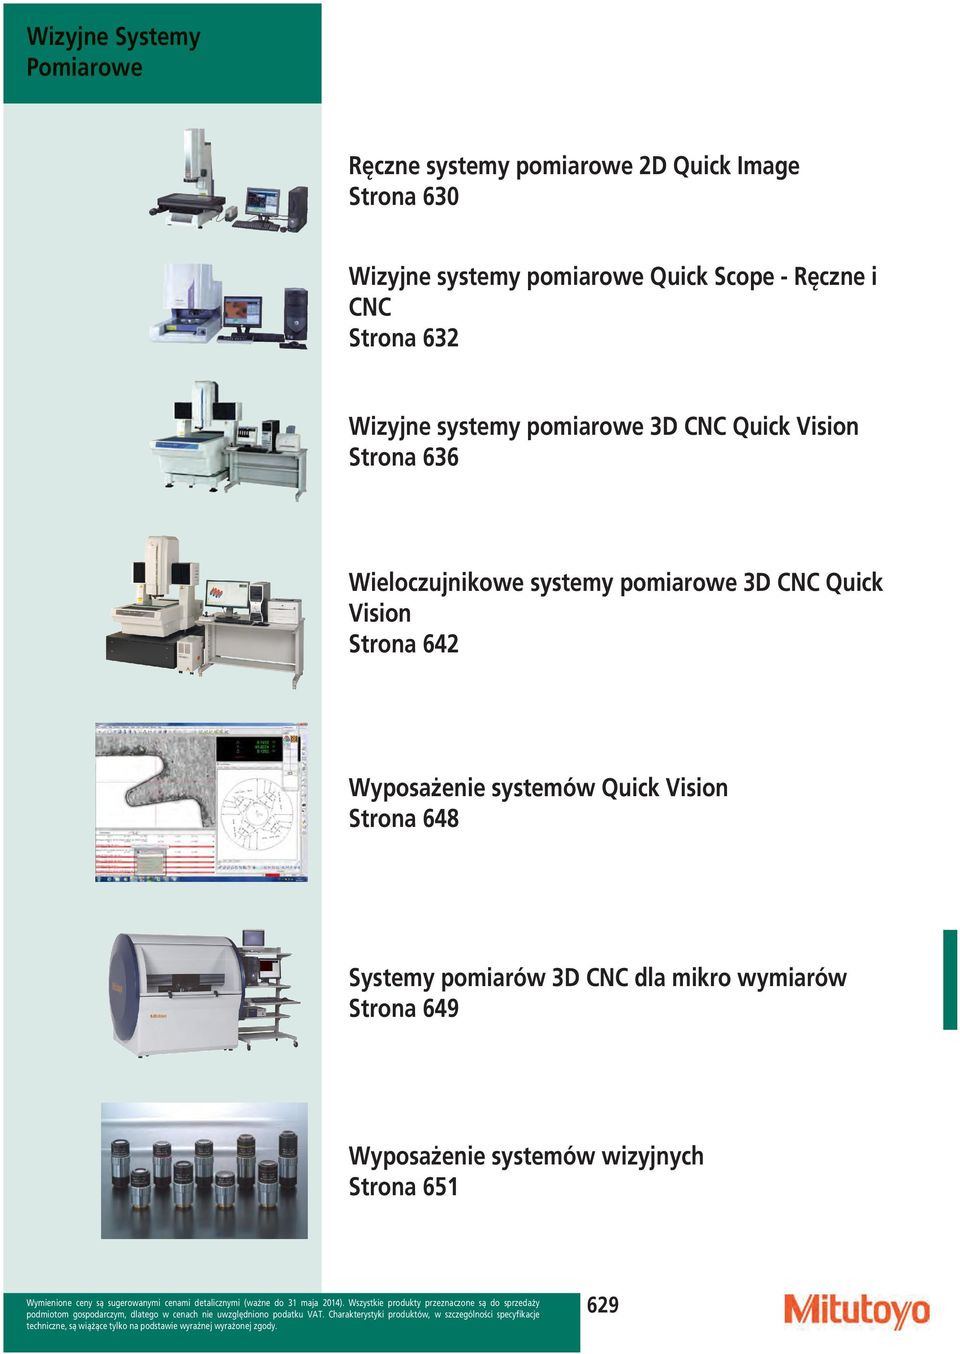 636 Wieloczujnikowe systemy pomiarowe 3D CNC Quick Vision Strona 642 Wyposażenie systemów Quick